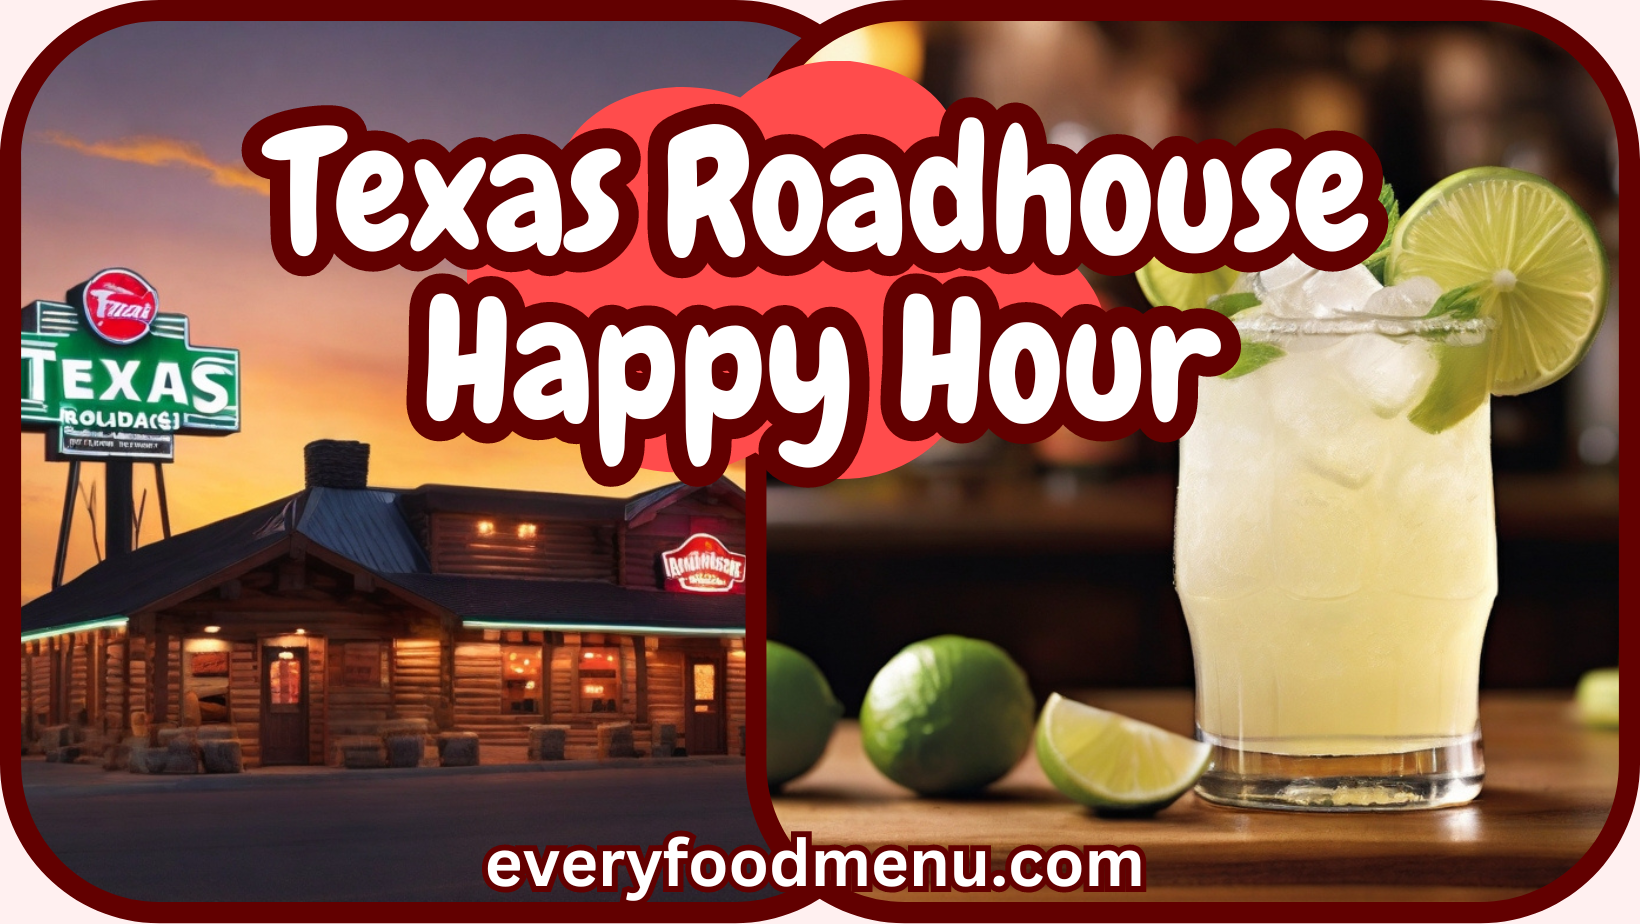 Texas roadhouse happy hour